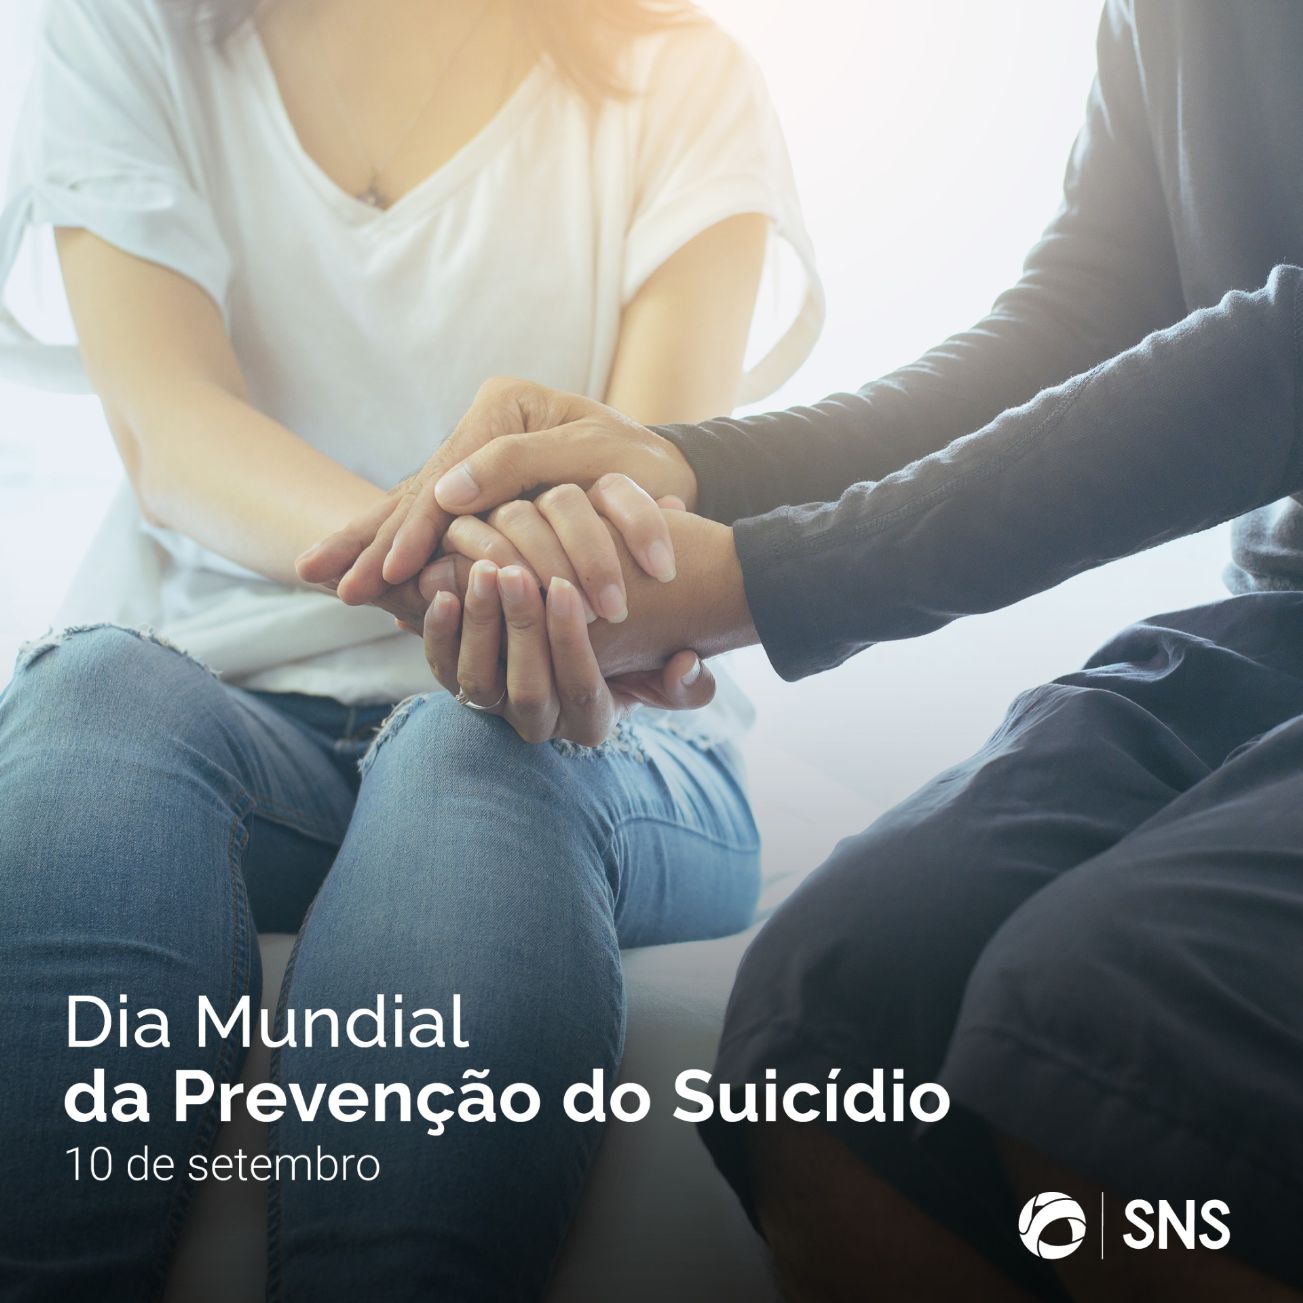 Hoje assinala-se o Dia Mundial da Prevenção do Suicídio